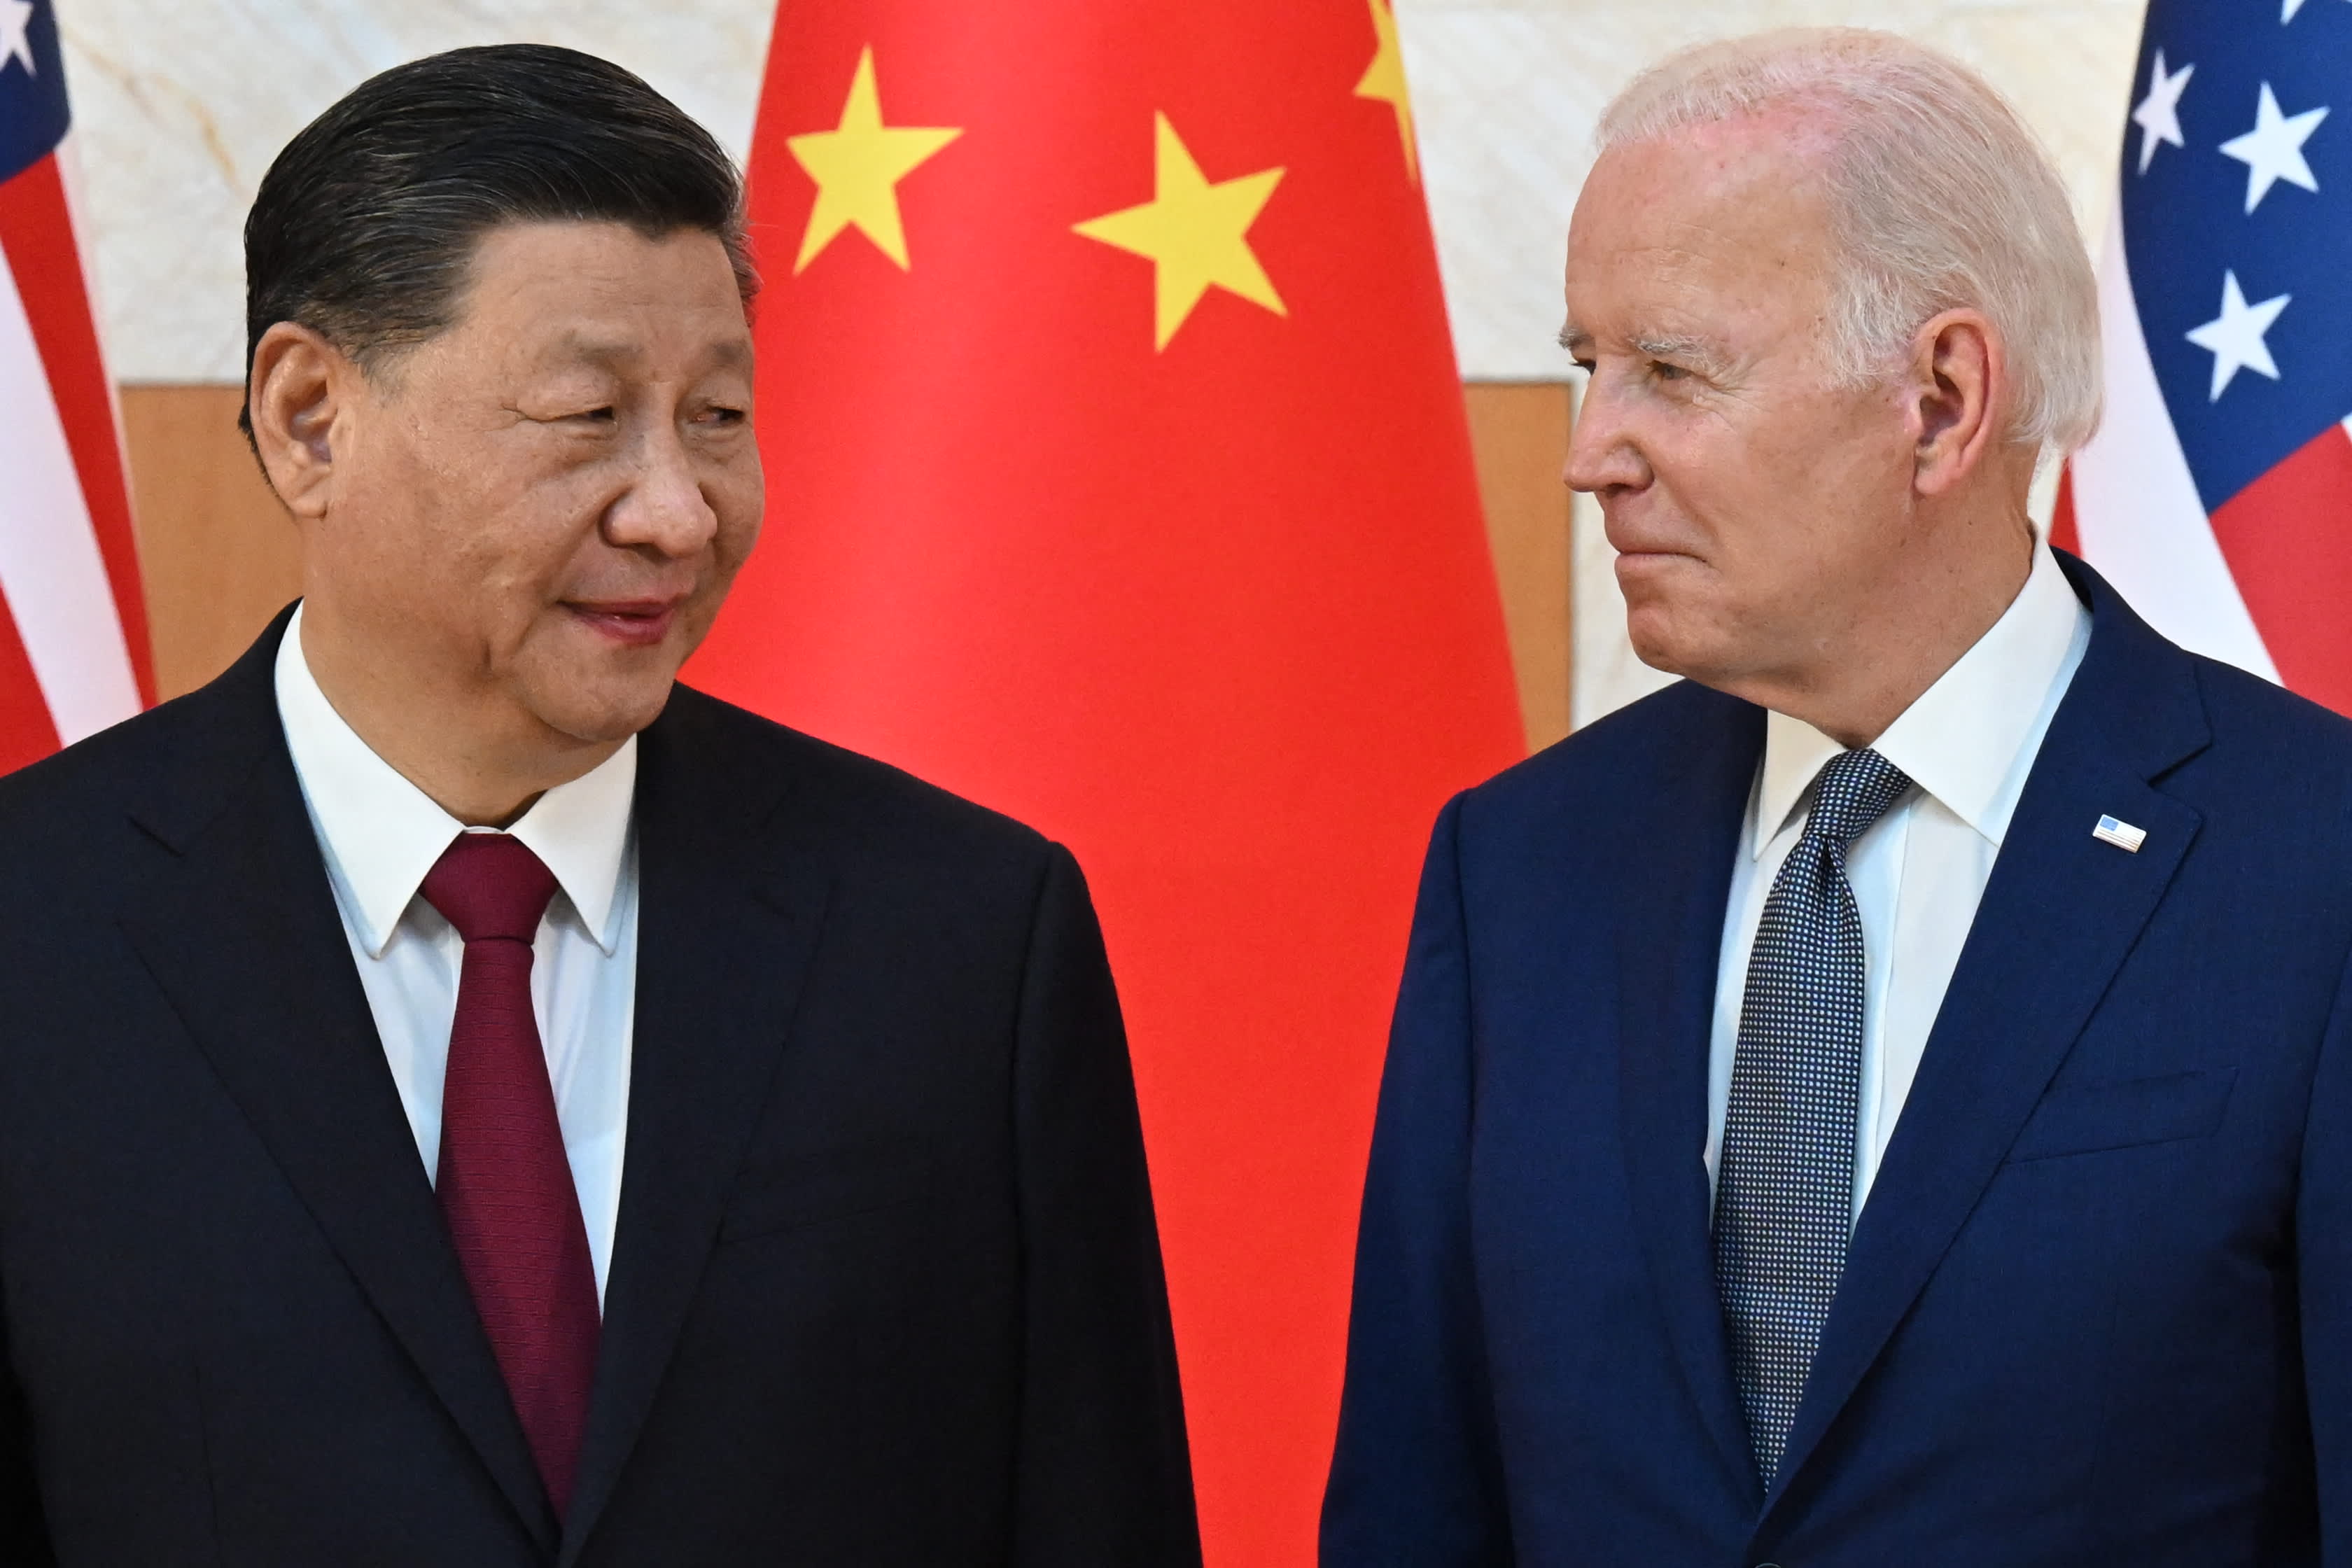 अमेरिका-चीन संबंध दोनों पक्षों पर विश्वास के बिना एक खतरनाक रास्ते पर हैं: रोच, कोहेन